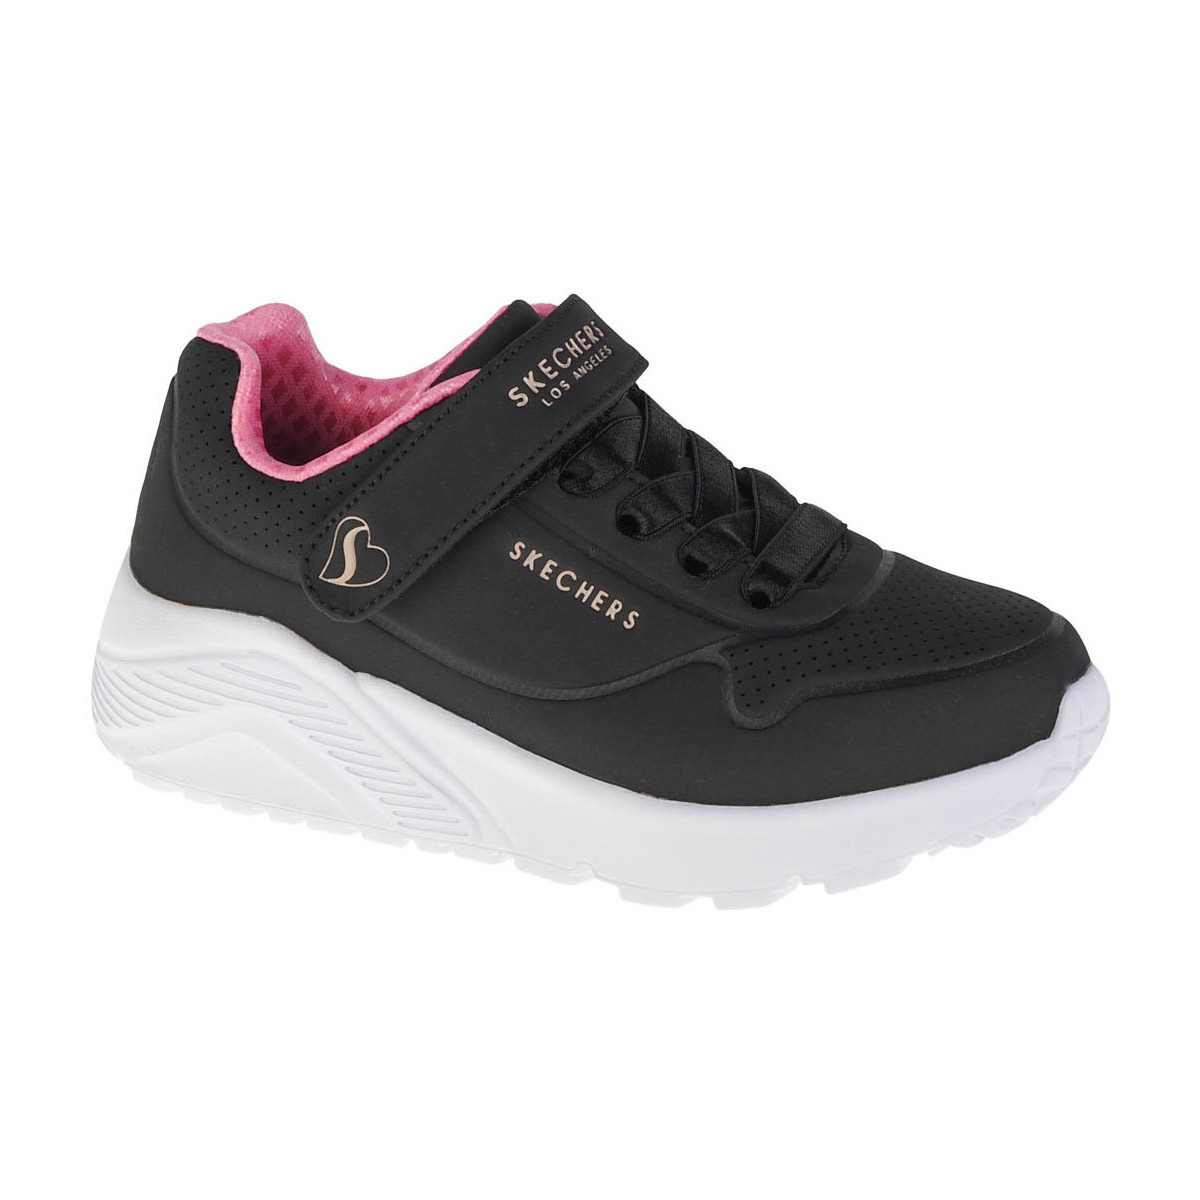 Παπούτσια Κορίτσι Χαμηλά Sneakers Skechers Uno Lite Black